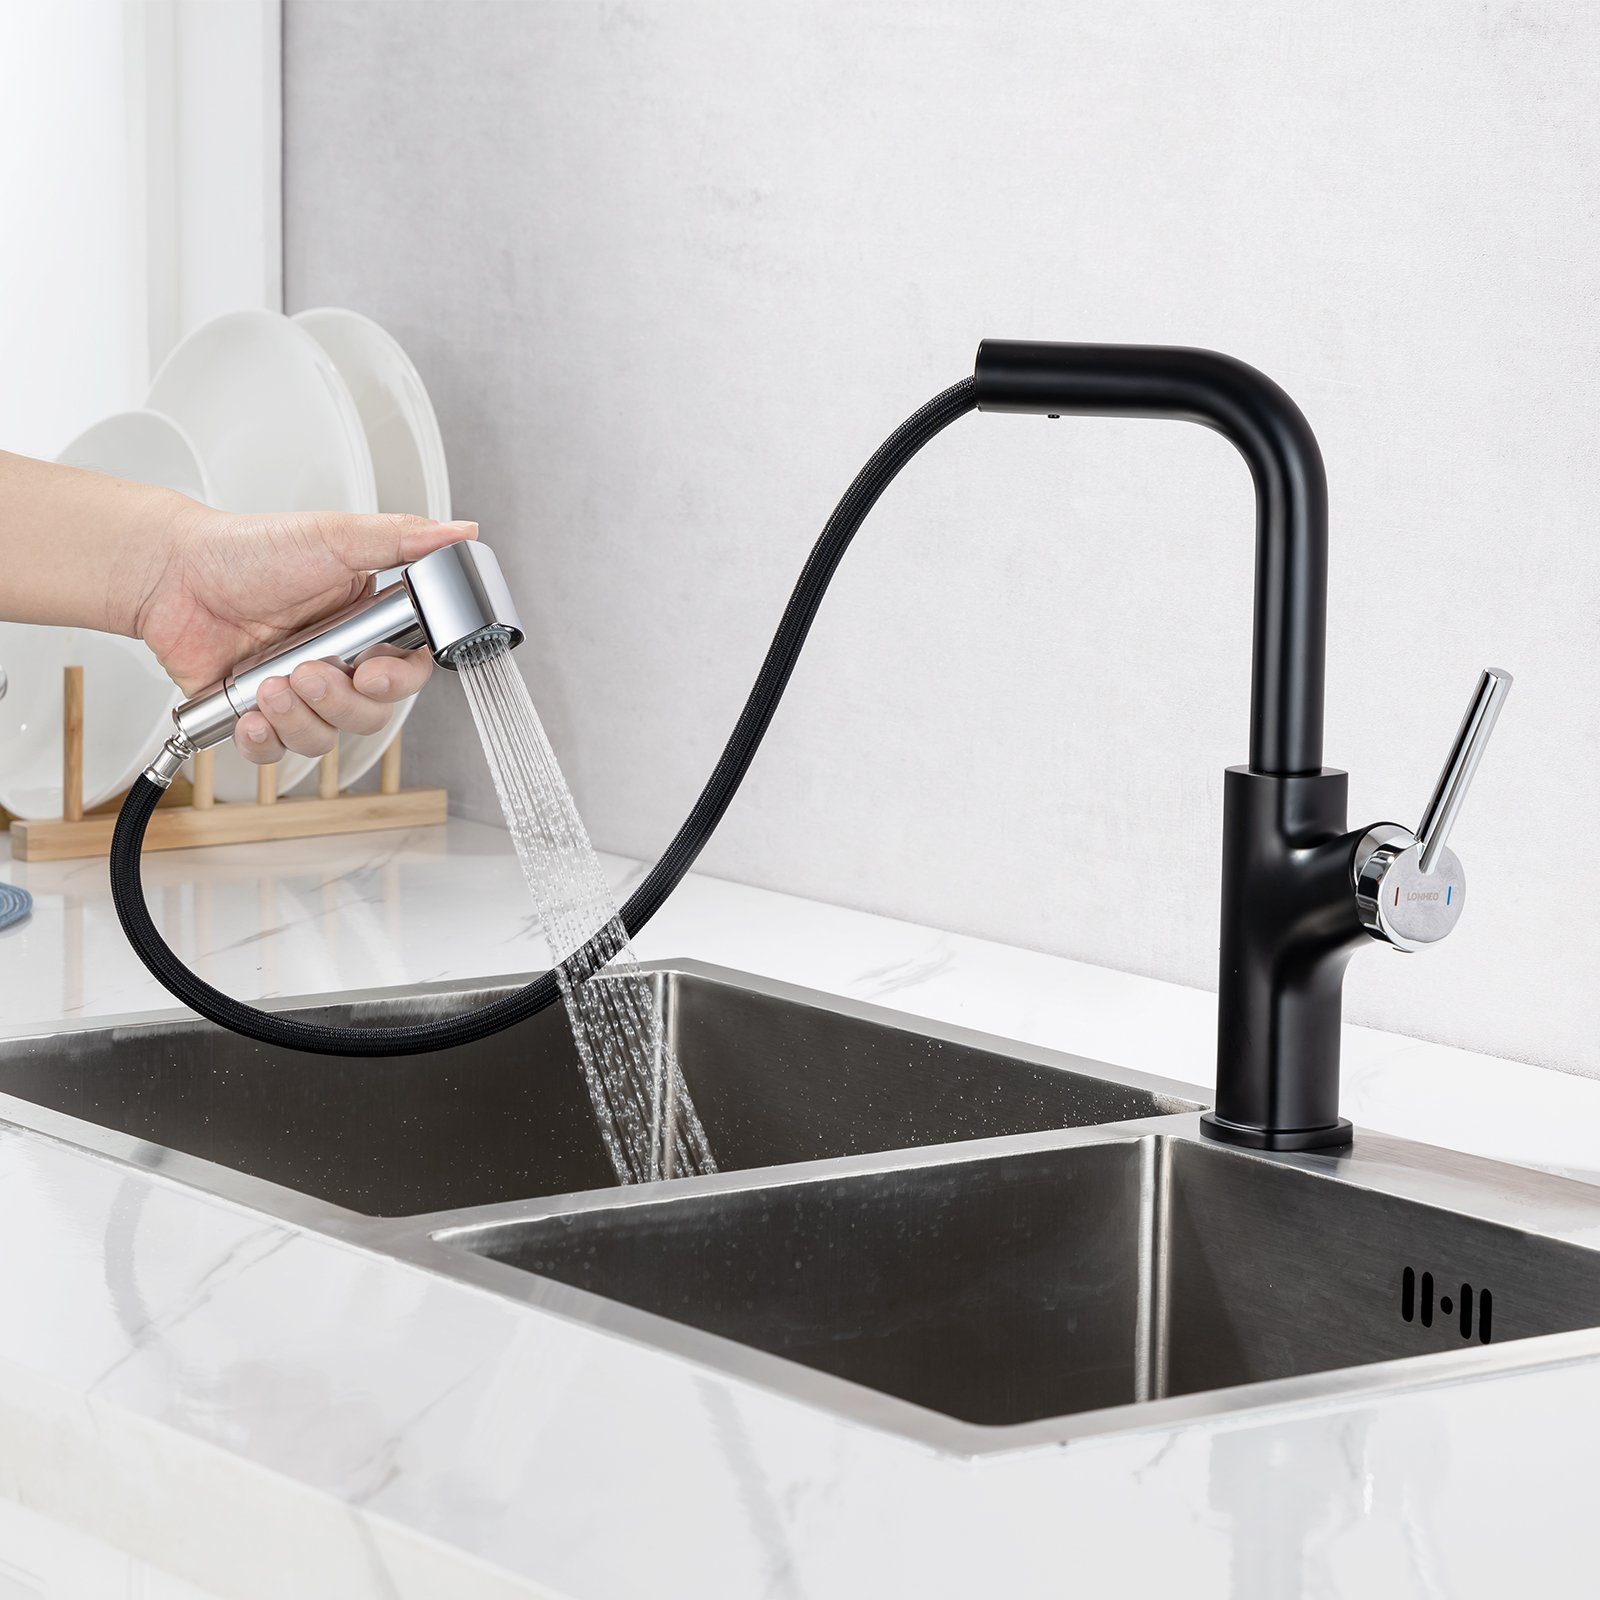 Lonheo Küchenarmatur Wasserhahn Spültischarmatur Mischbatterie mit Ausziehbar Brause 360° für Küche Armatur Einhandmischer Schwarz+Chorm